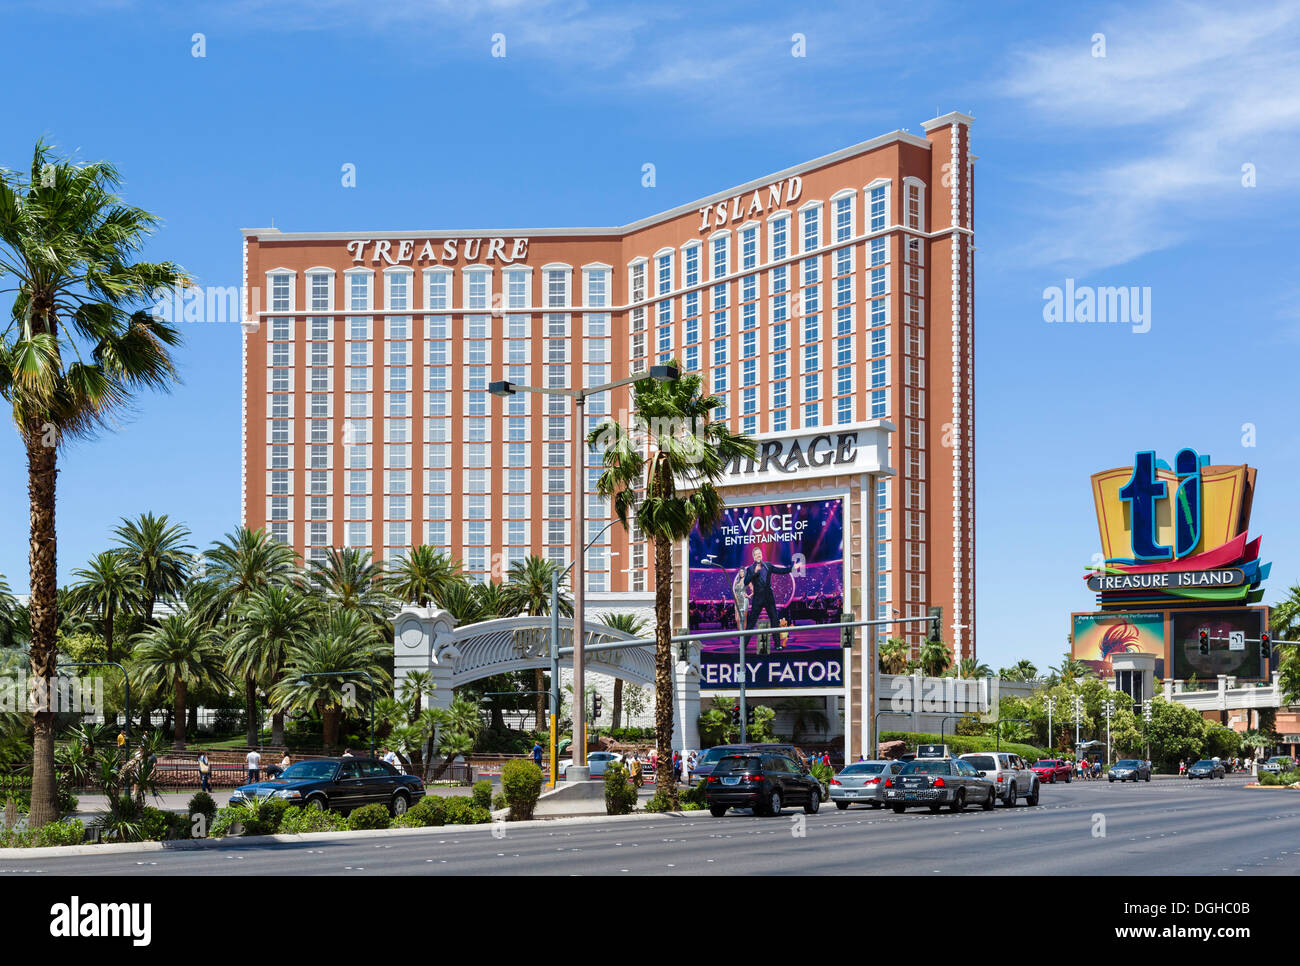 Treasure Island hotel and casino, Las Vegas Boulevard South (The Strip), Las Vegas, Nevada, USA Stock Photo